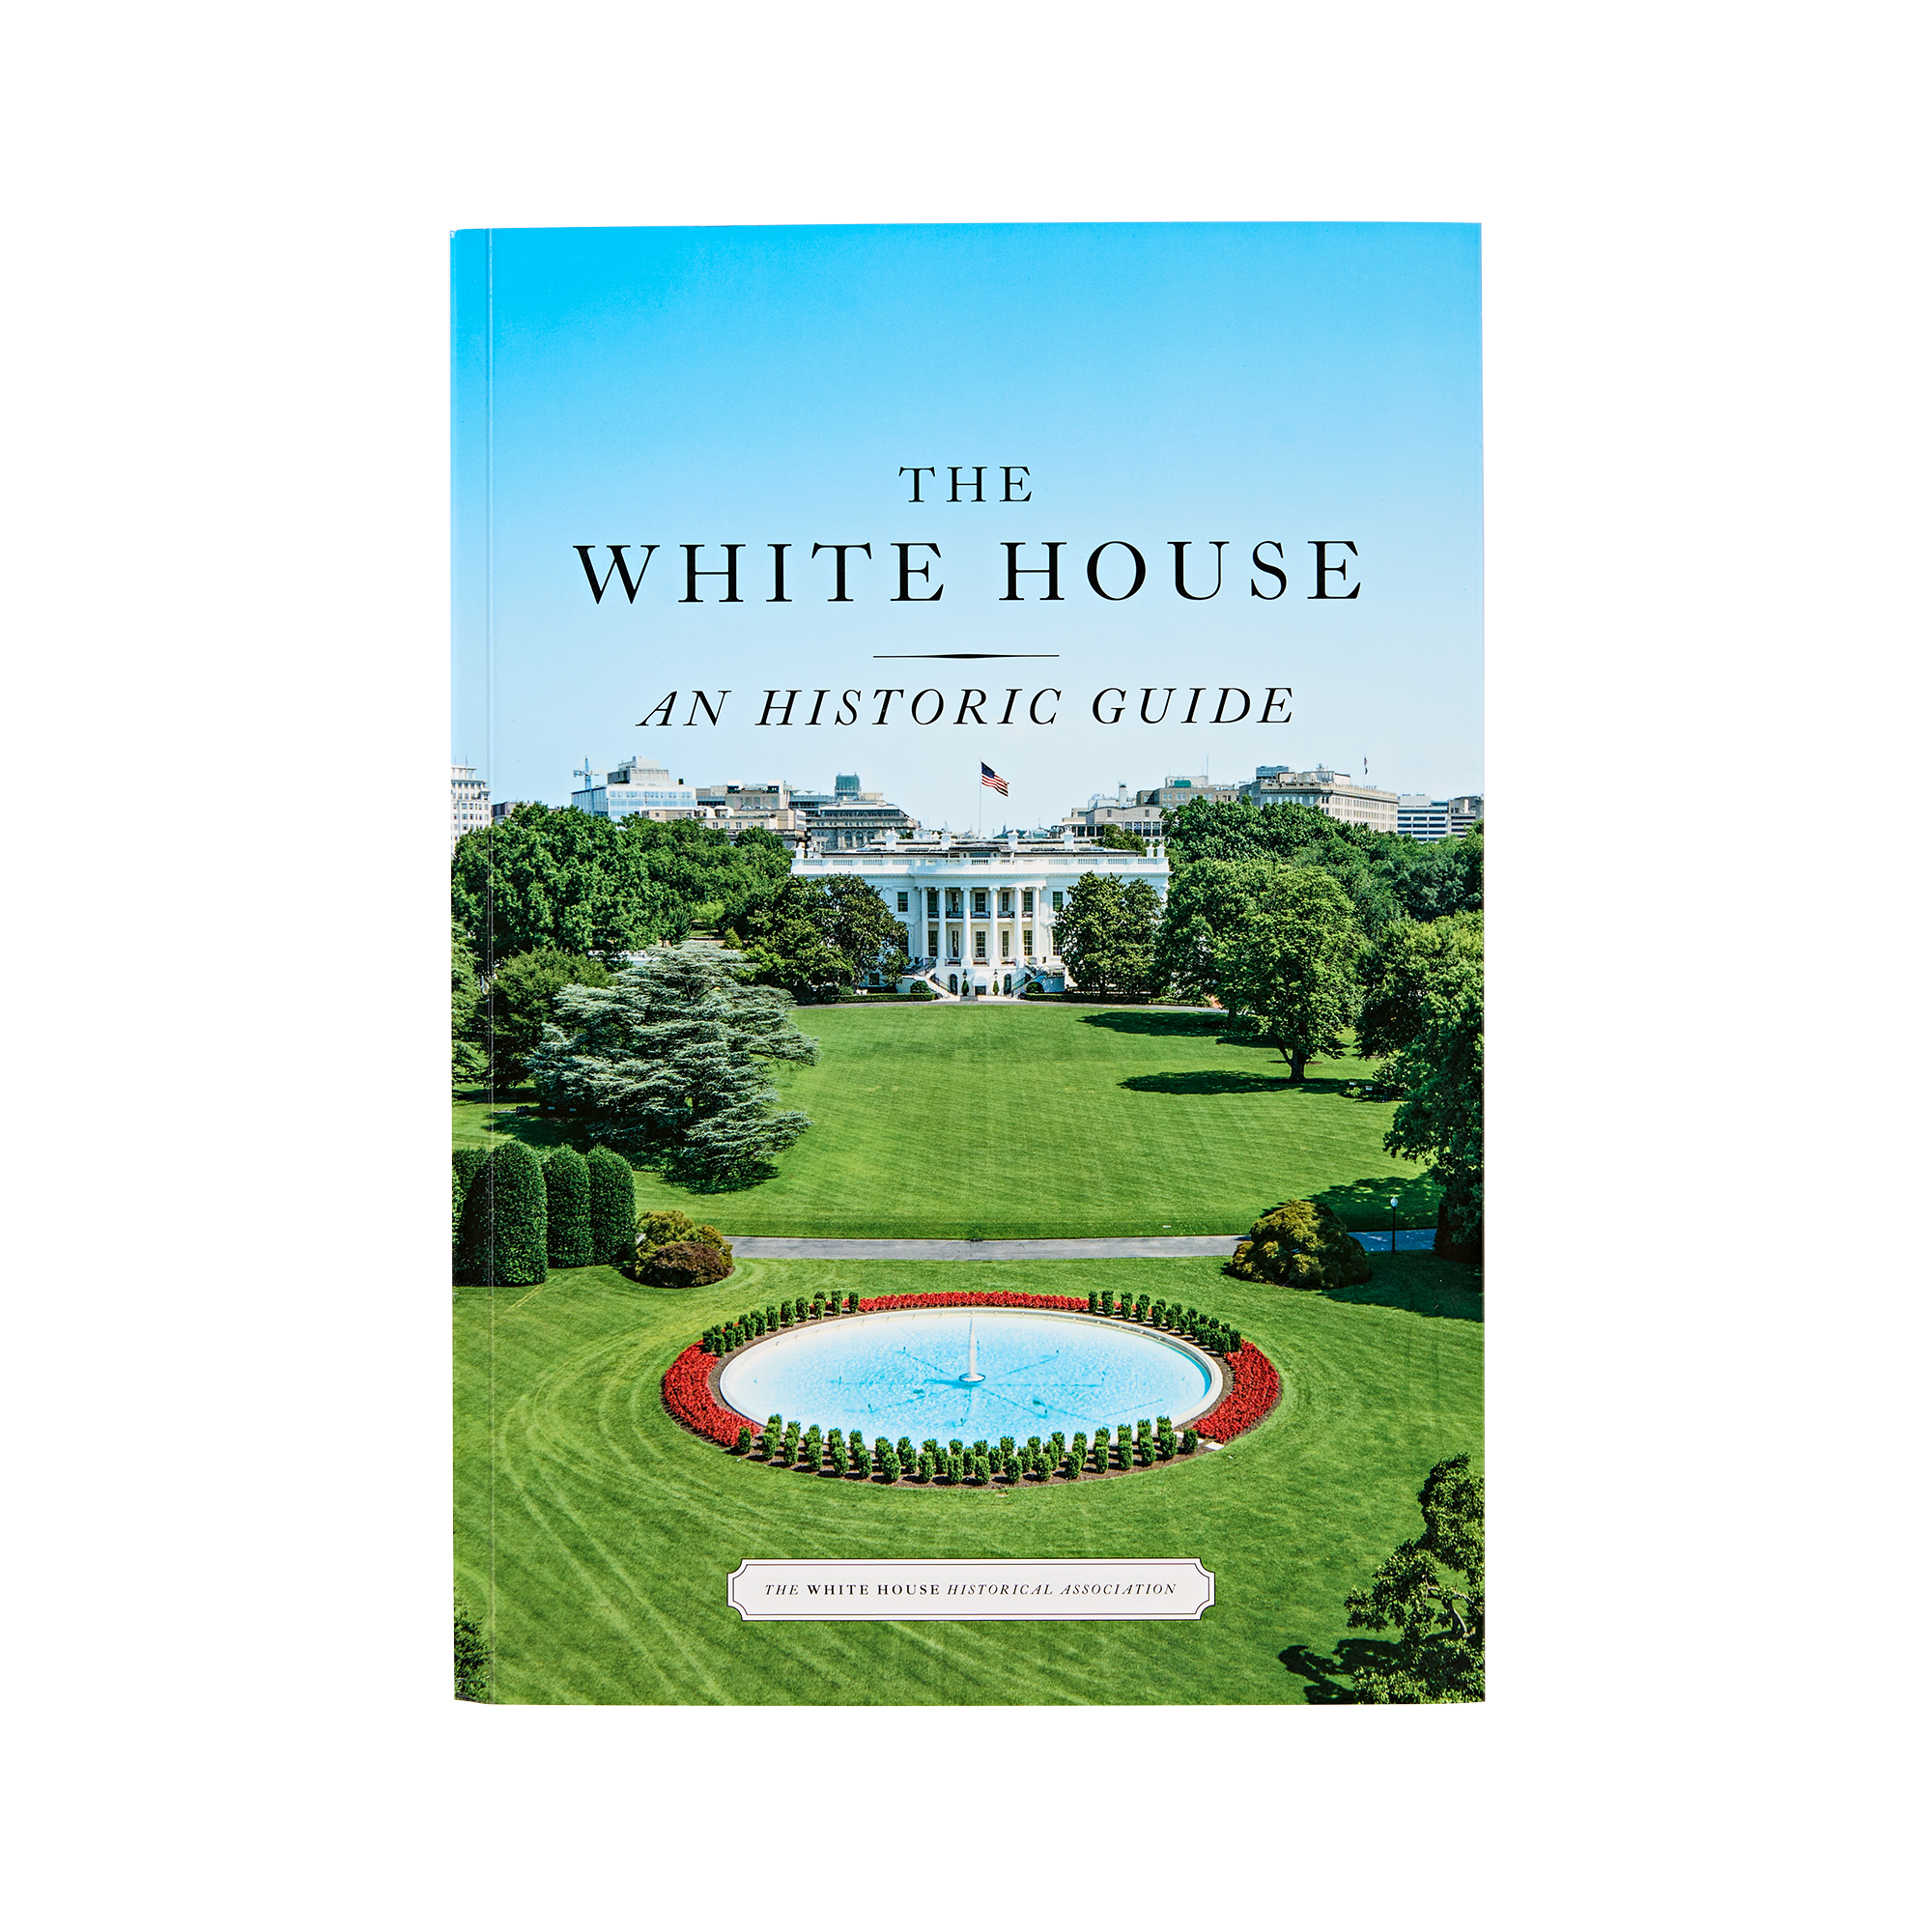 White House Tour Inside